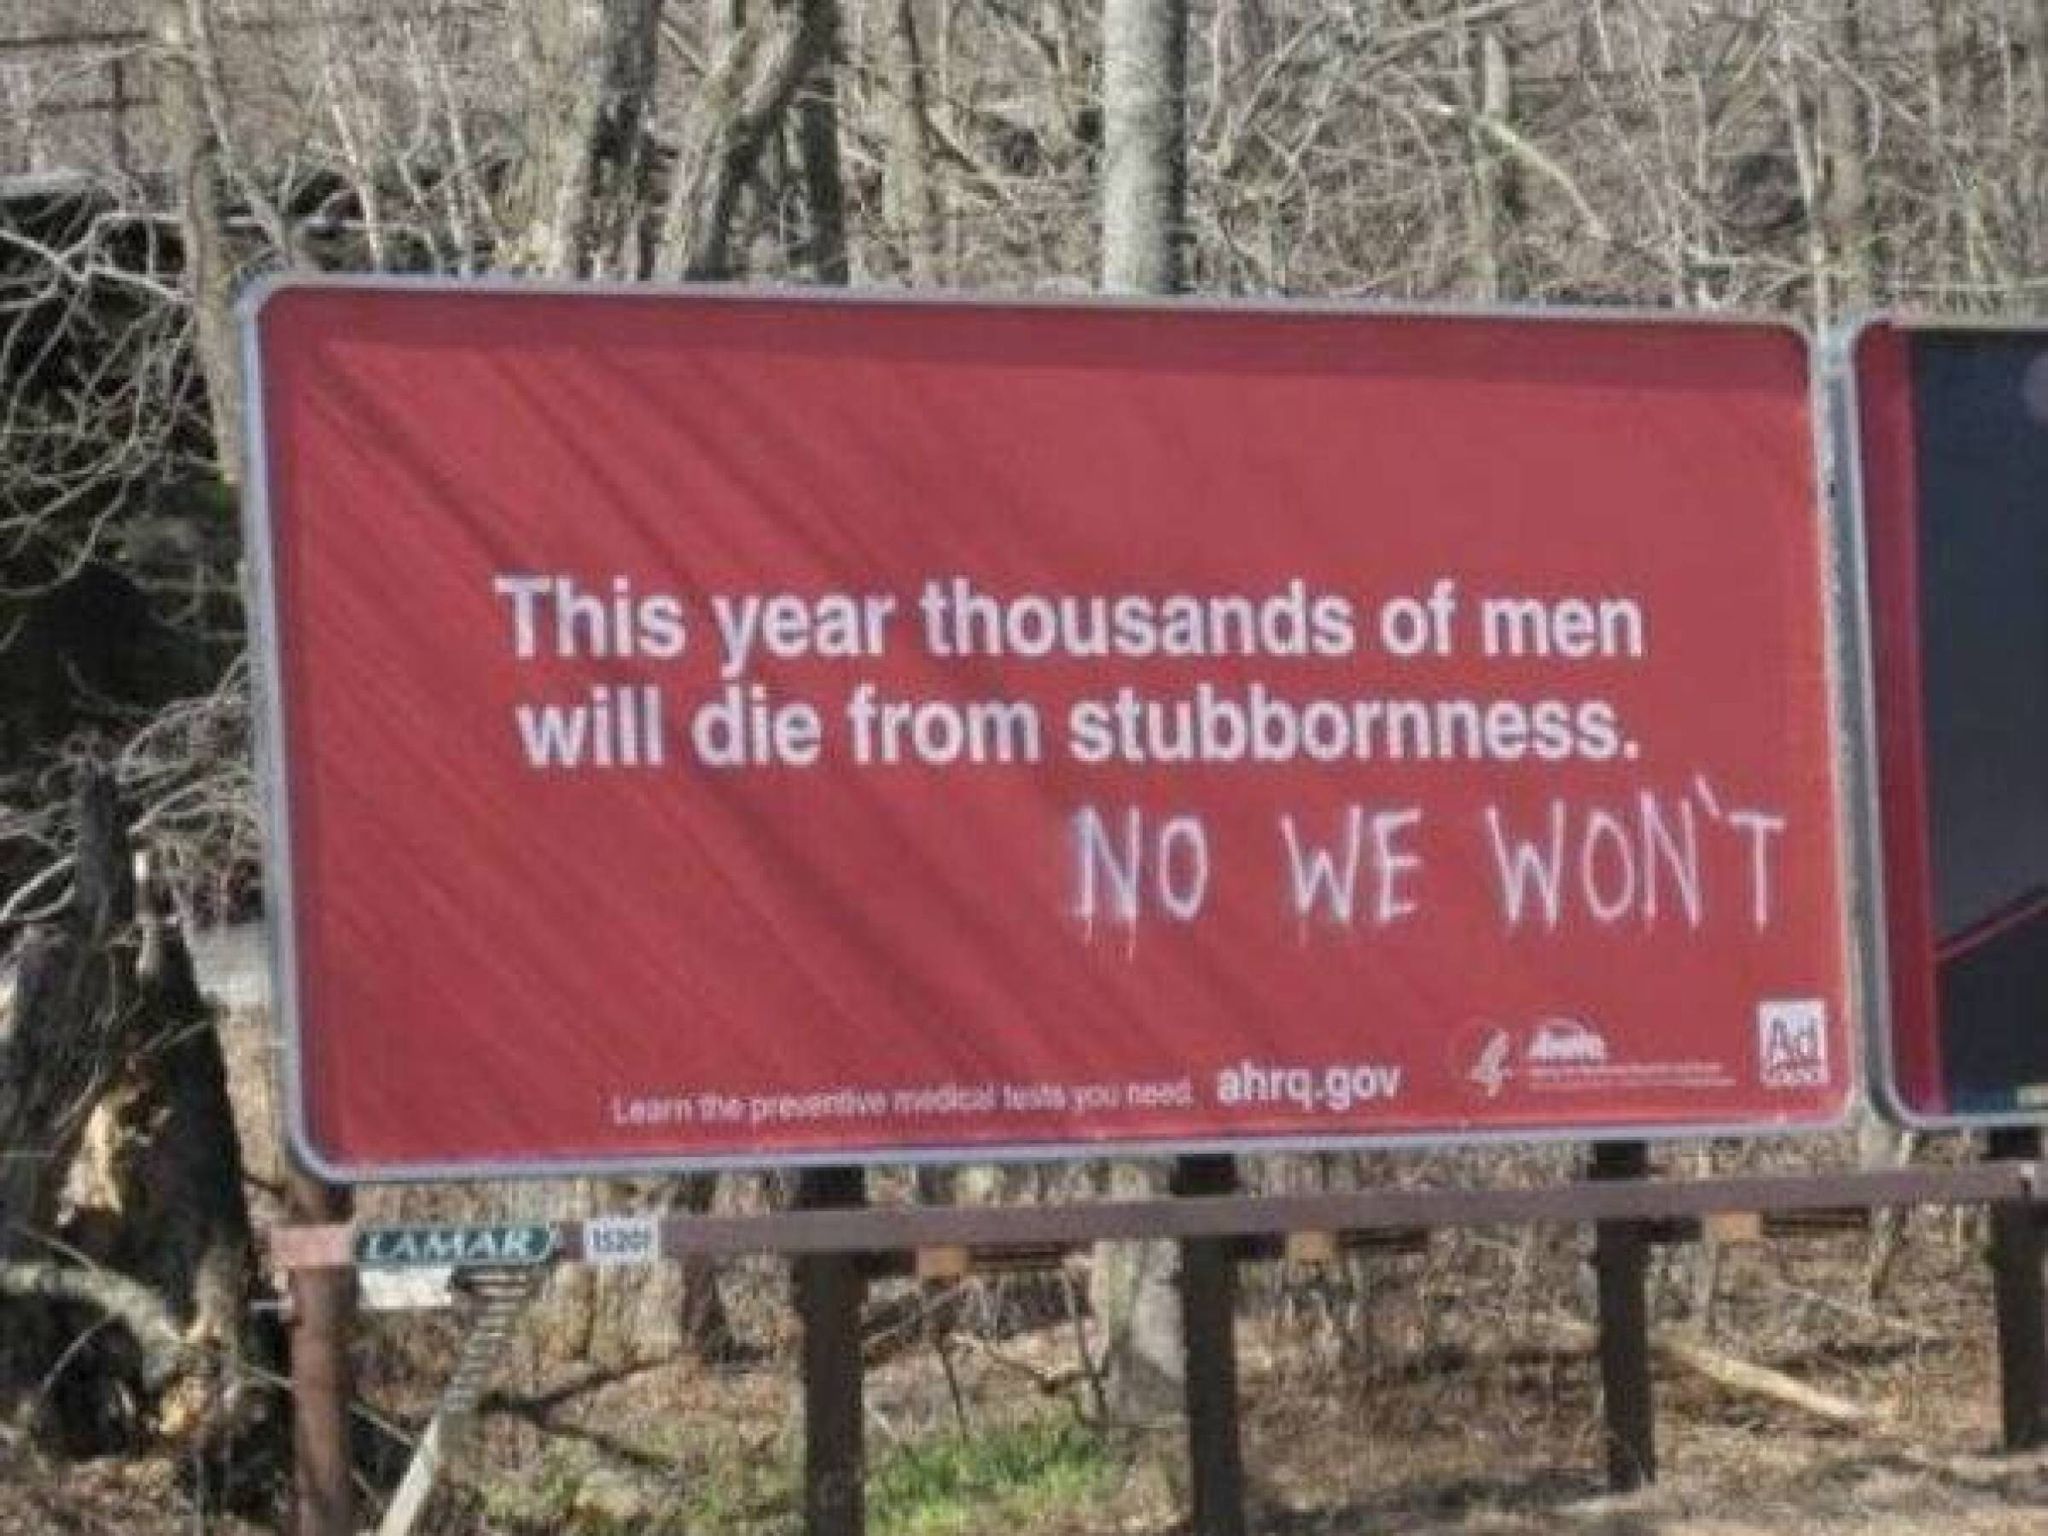 Stubborn men unite!